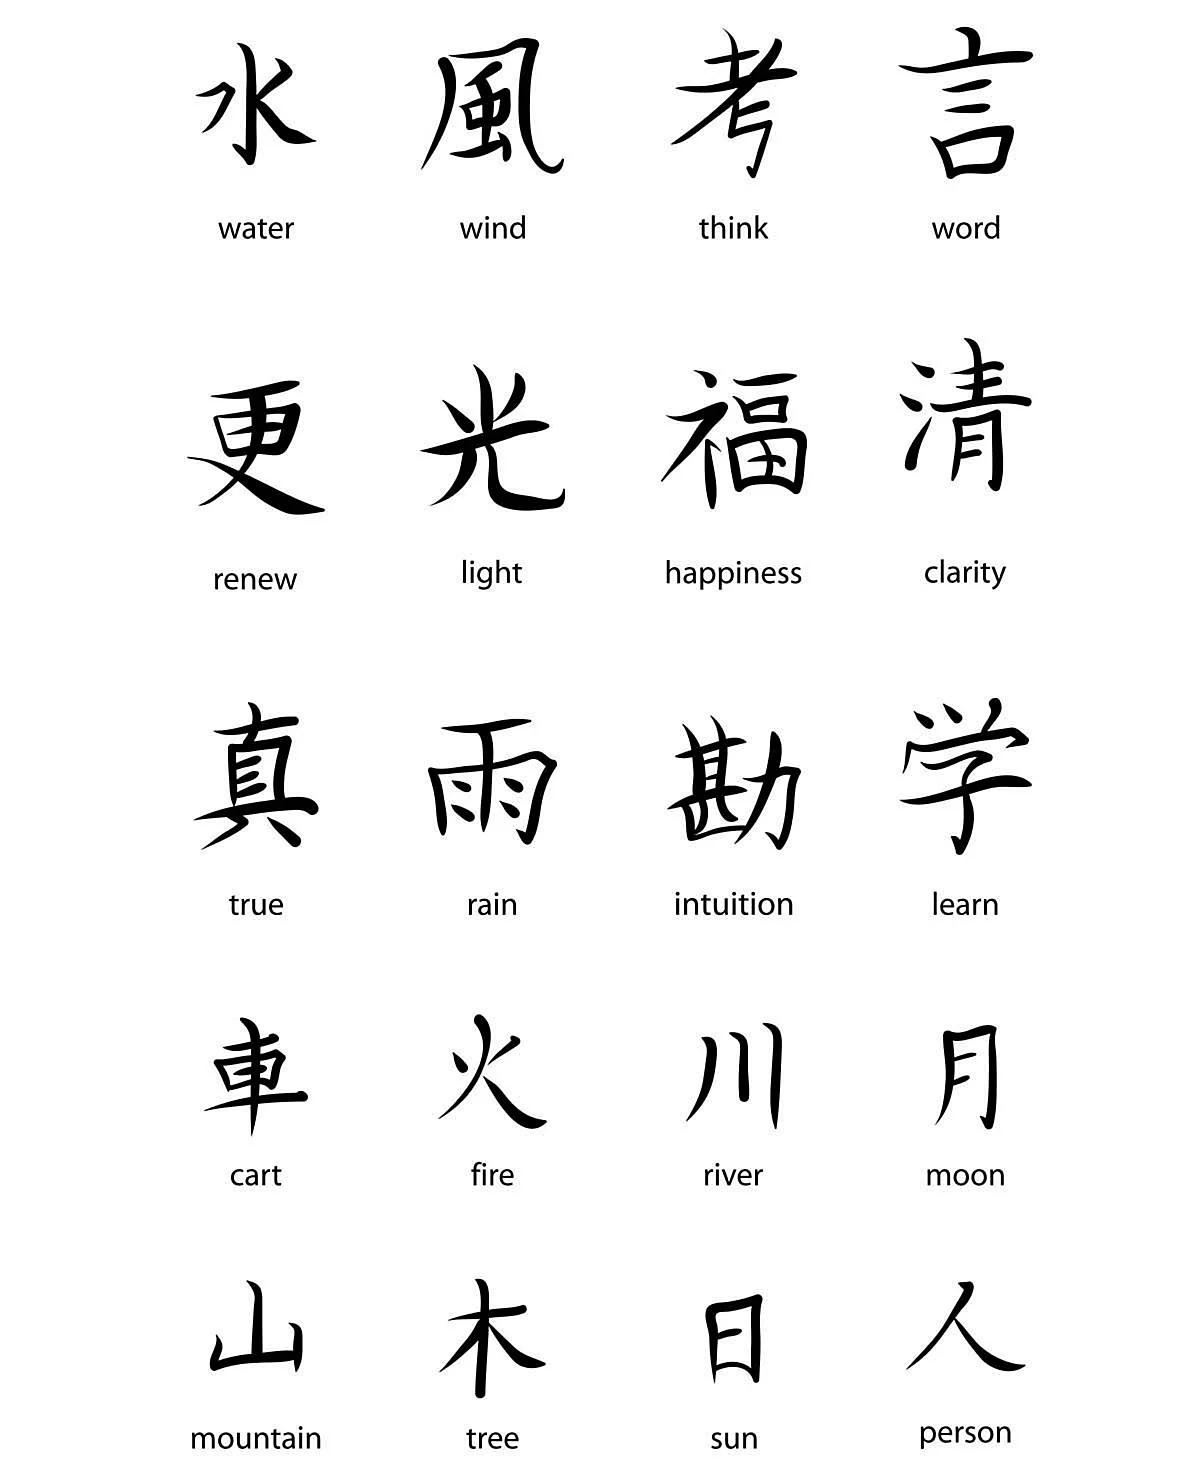 Японский кандзи иероглиф знак